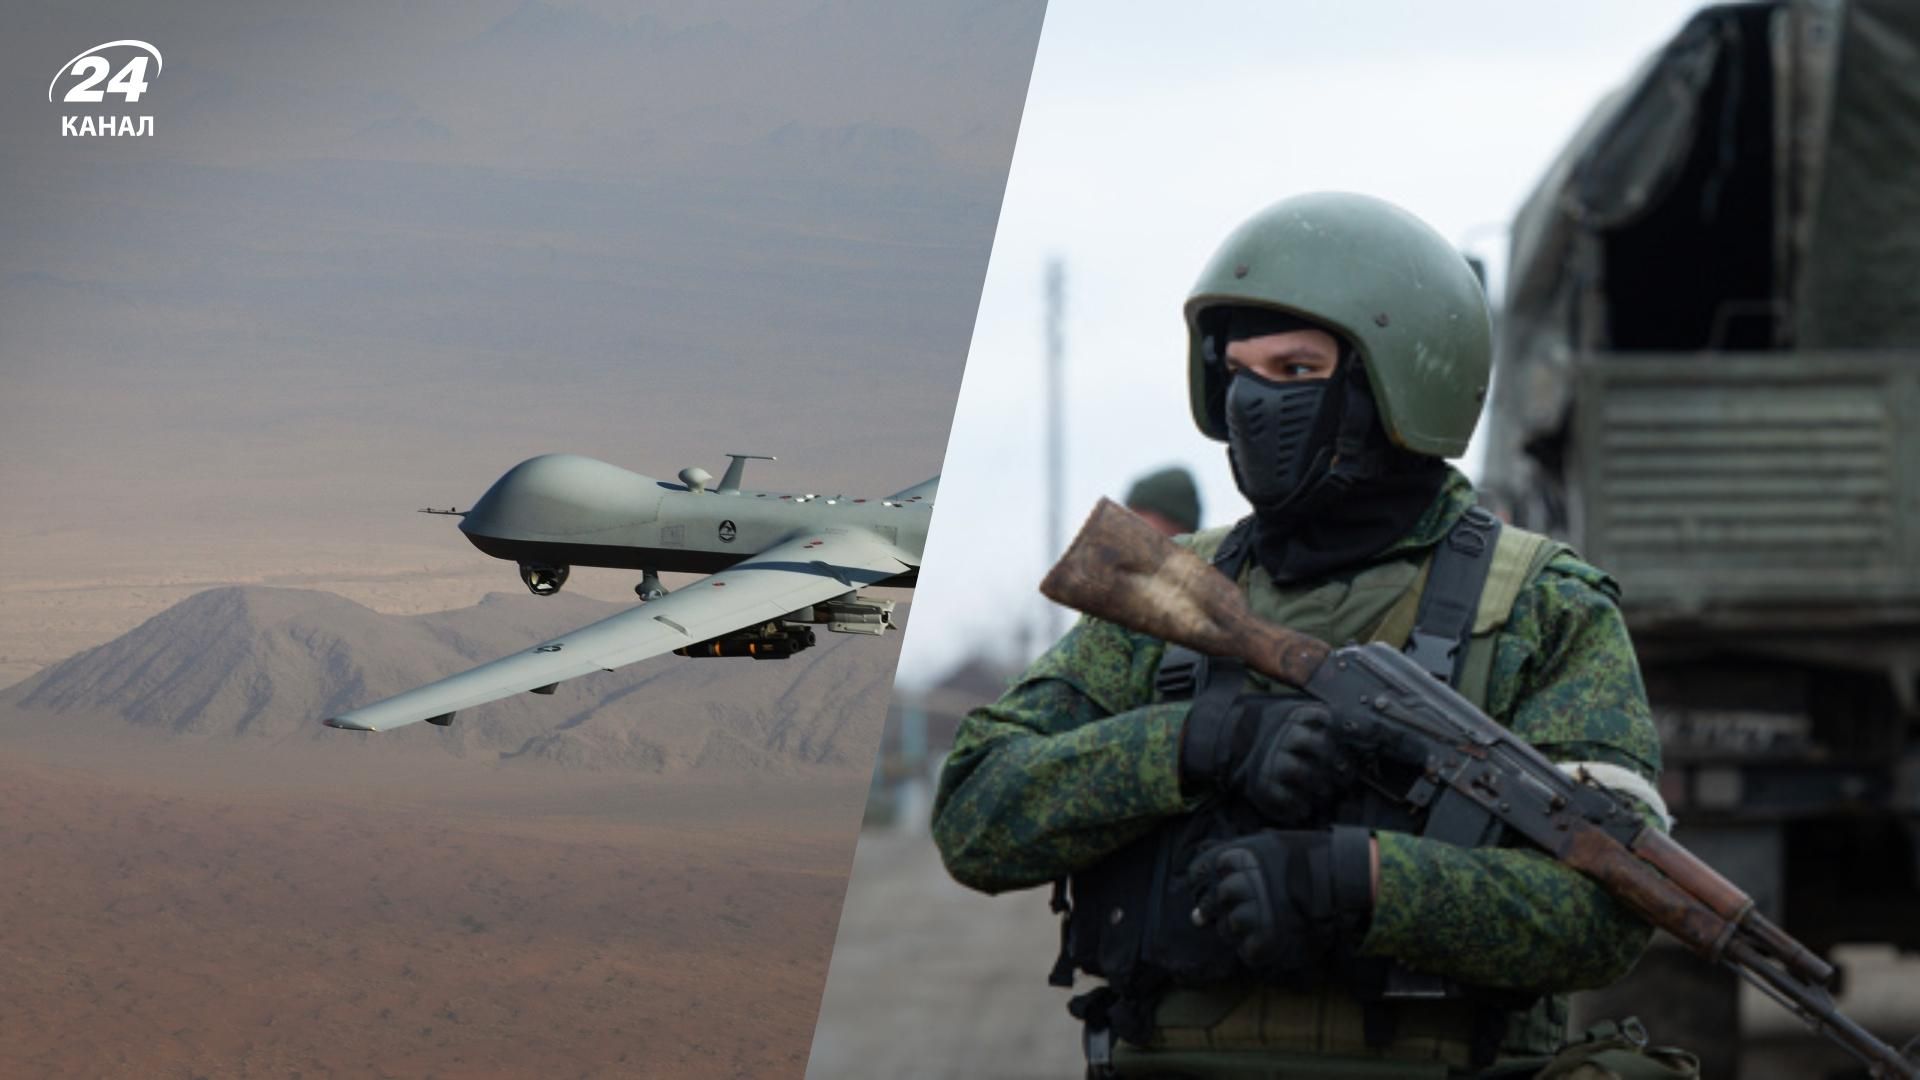 Иранские дроны могут улучшить российскую воздушную разведку на войне против Украины- 24 Канал